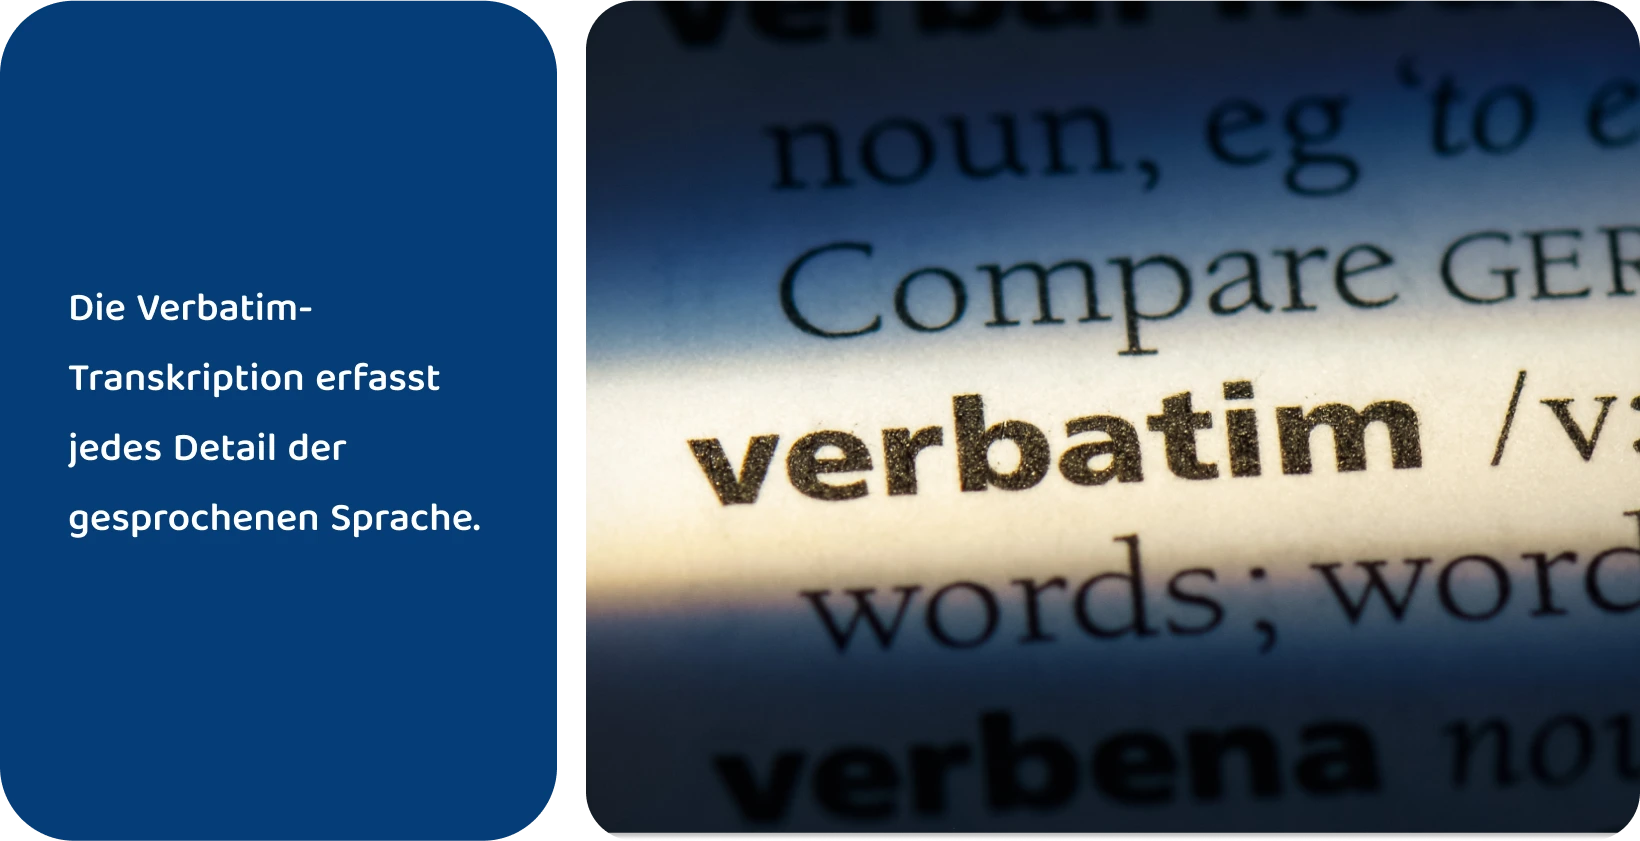 Der Wörterbucheintrag des Wortes "wörtlich" ist hervorgehoben und steht für präzise Transkriptionsmethoden.